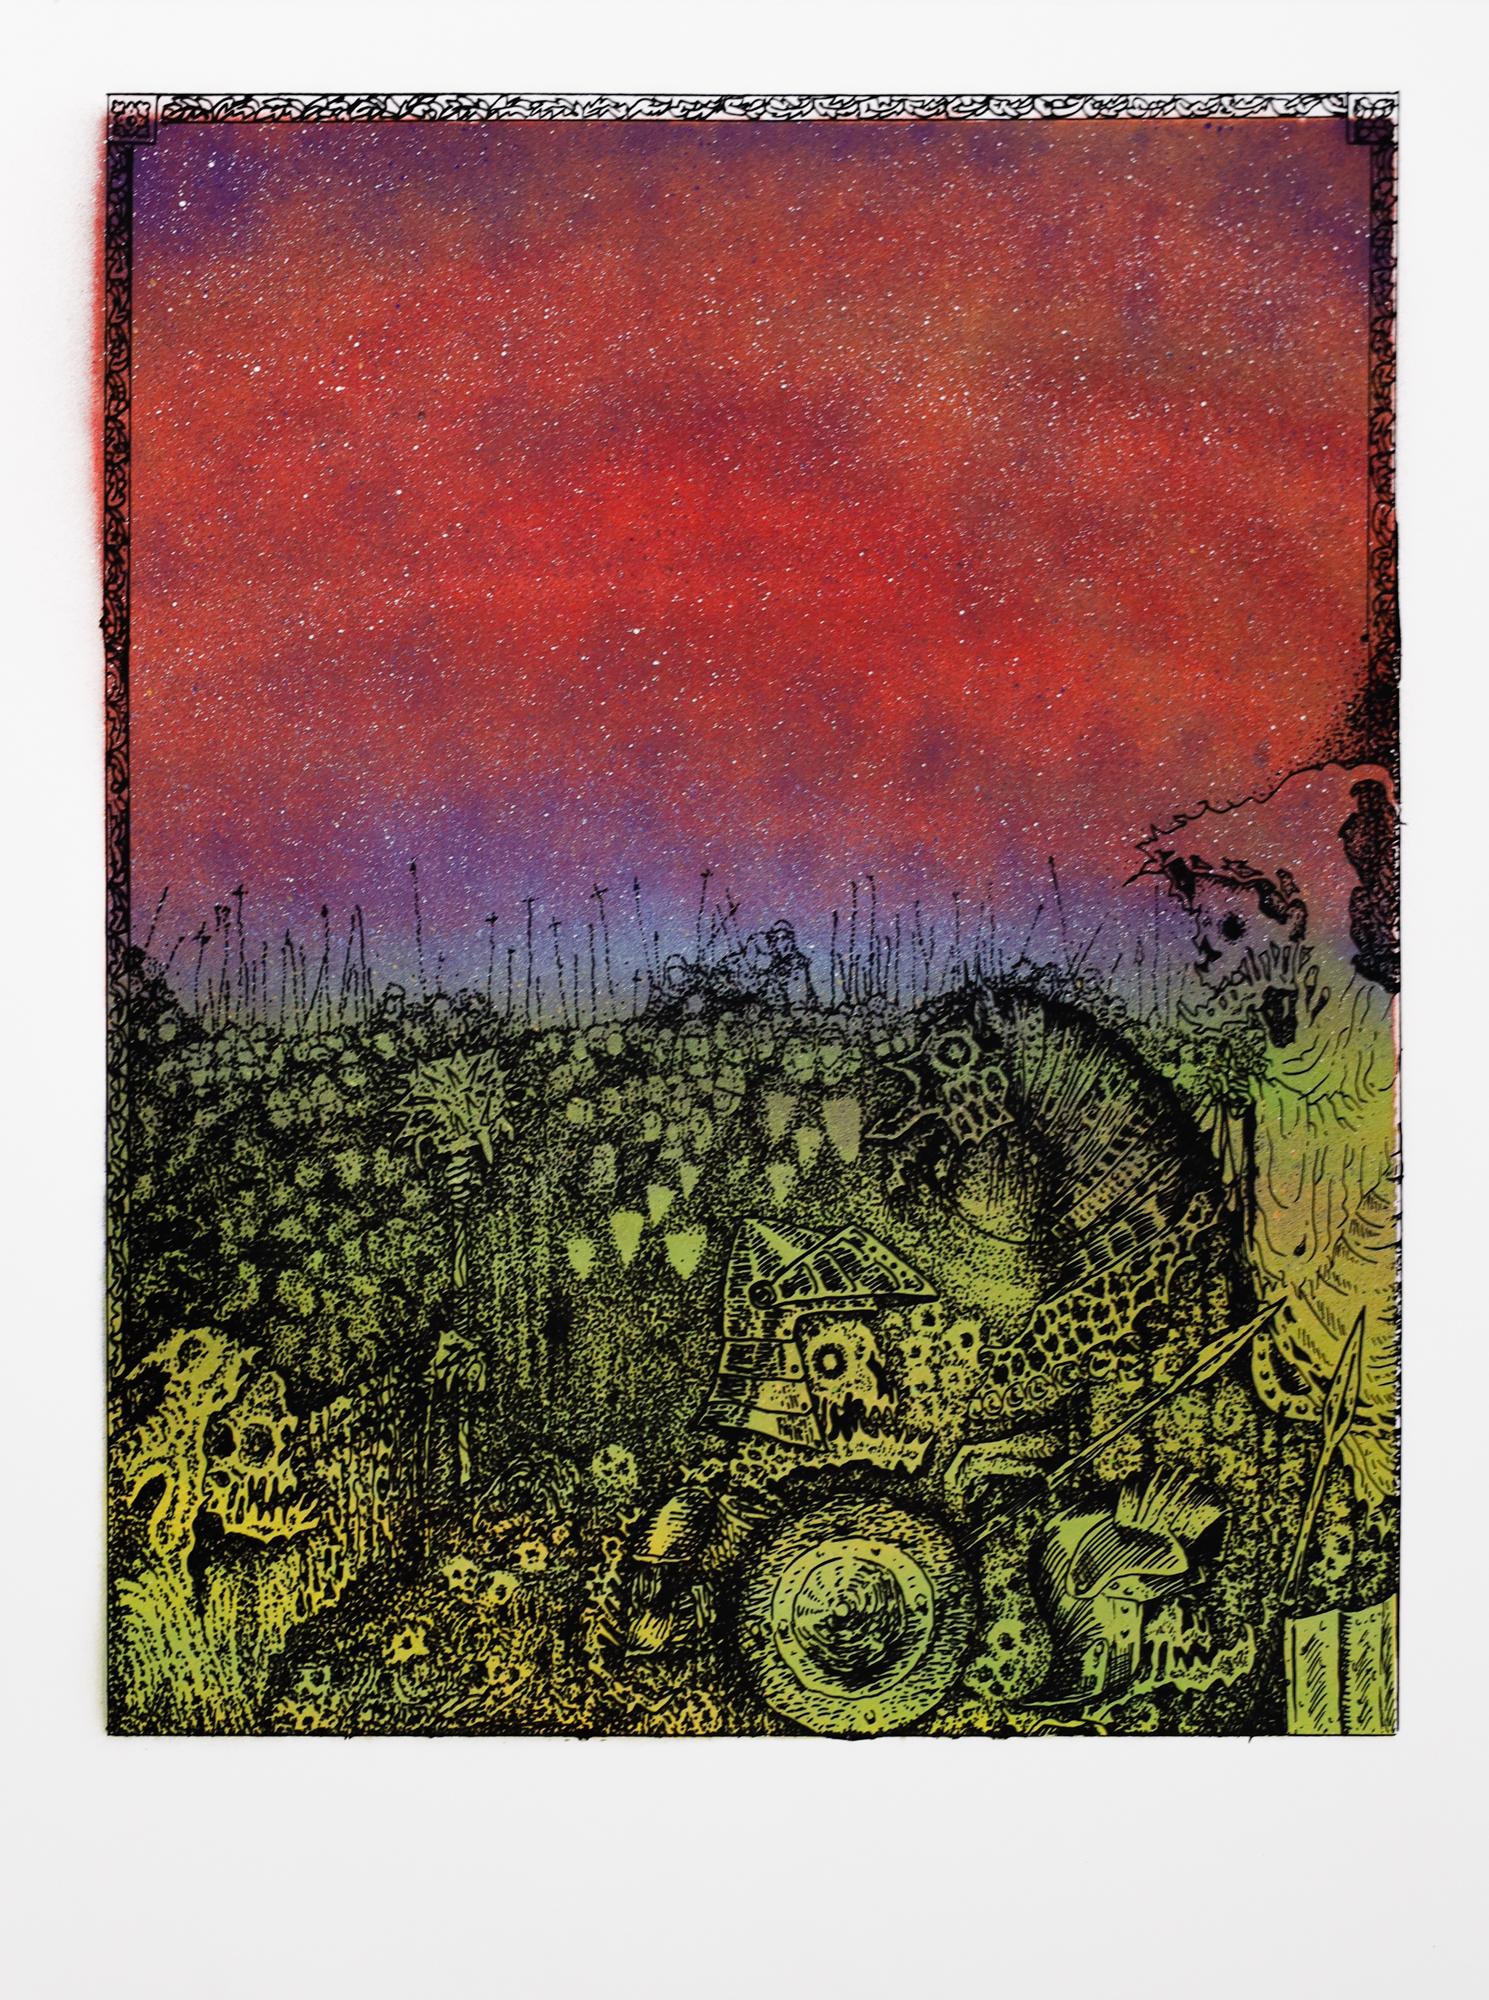 Dieses Werk mit dem Titel "Jake Yeager Untitled 6" ist ein Originalkunstwerk von Jake Yeager und wurde mit Sprühfarbe und Siebdruck hergestellt. Dieses Stück misst 24 "h x 18 "b.

Der 1997 in der Arch Street 1026 in Philadelphias Chinatown